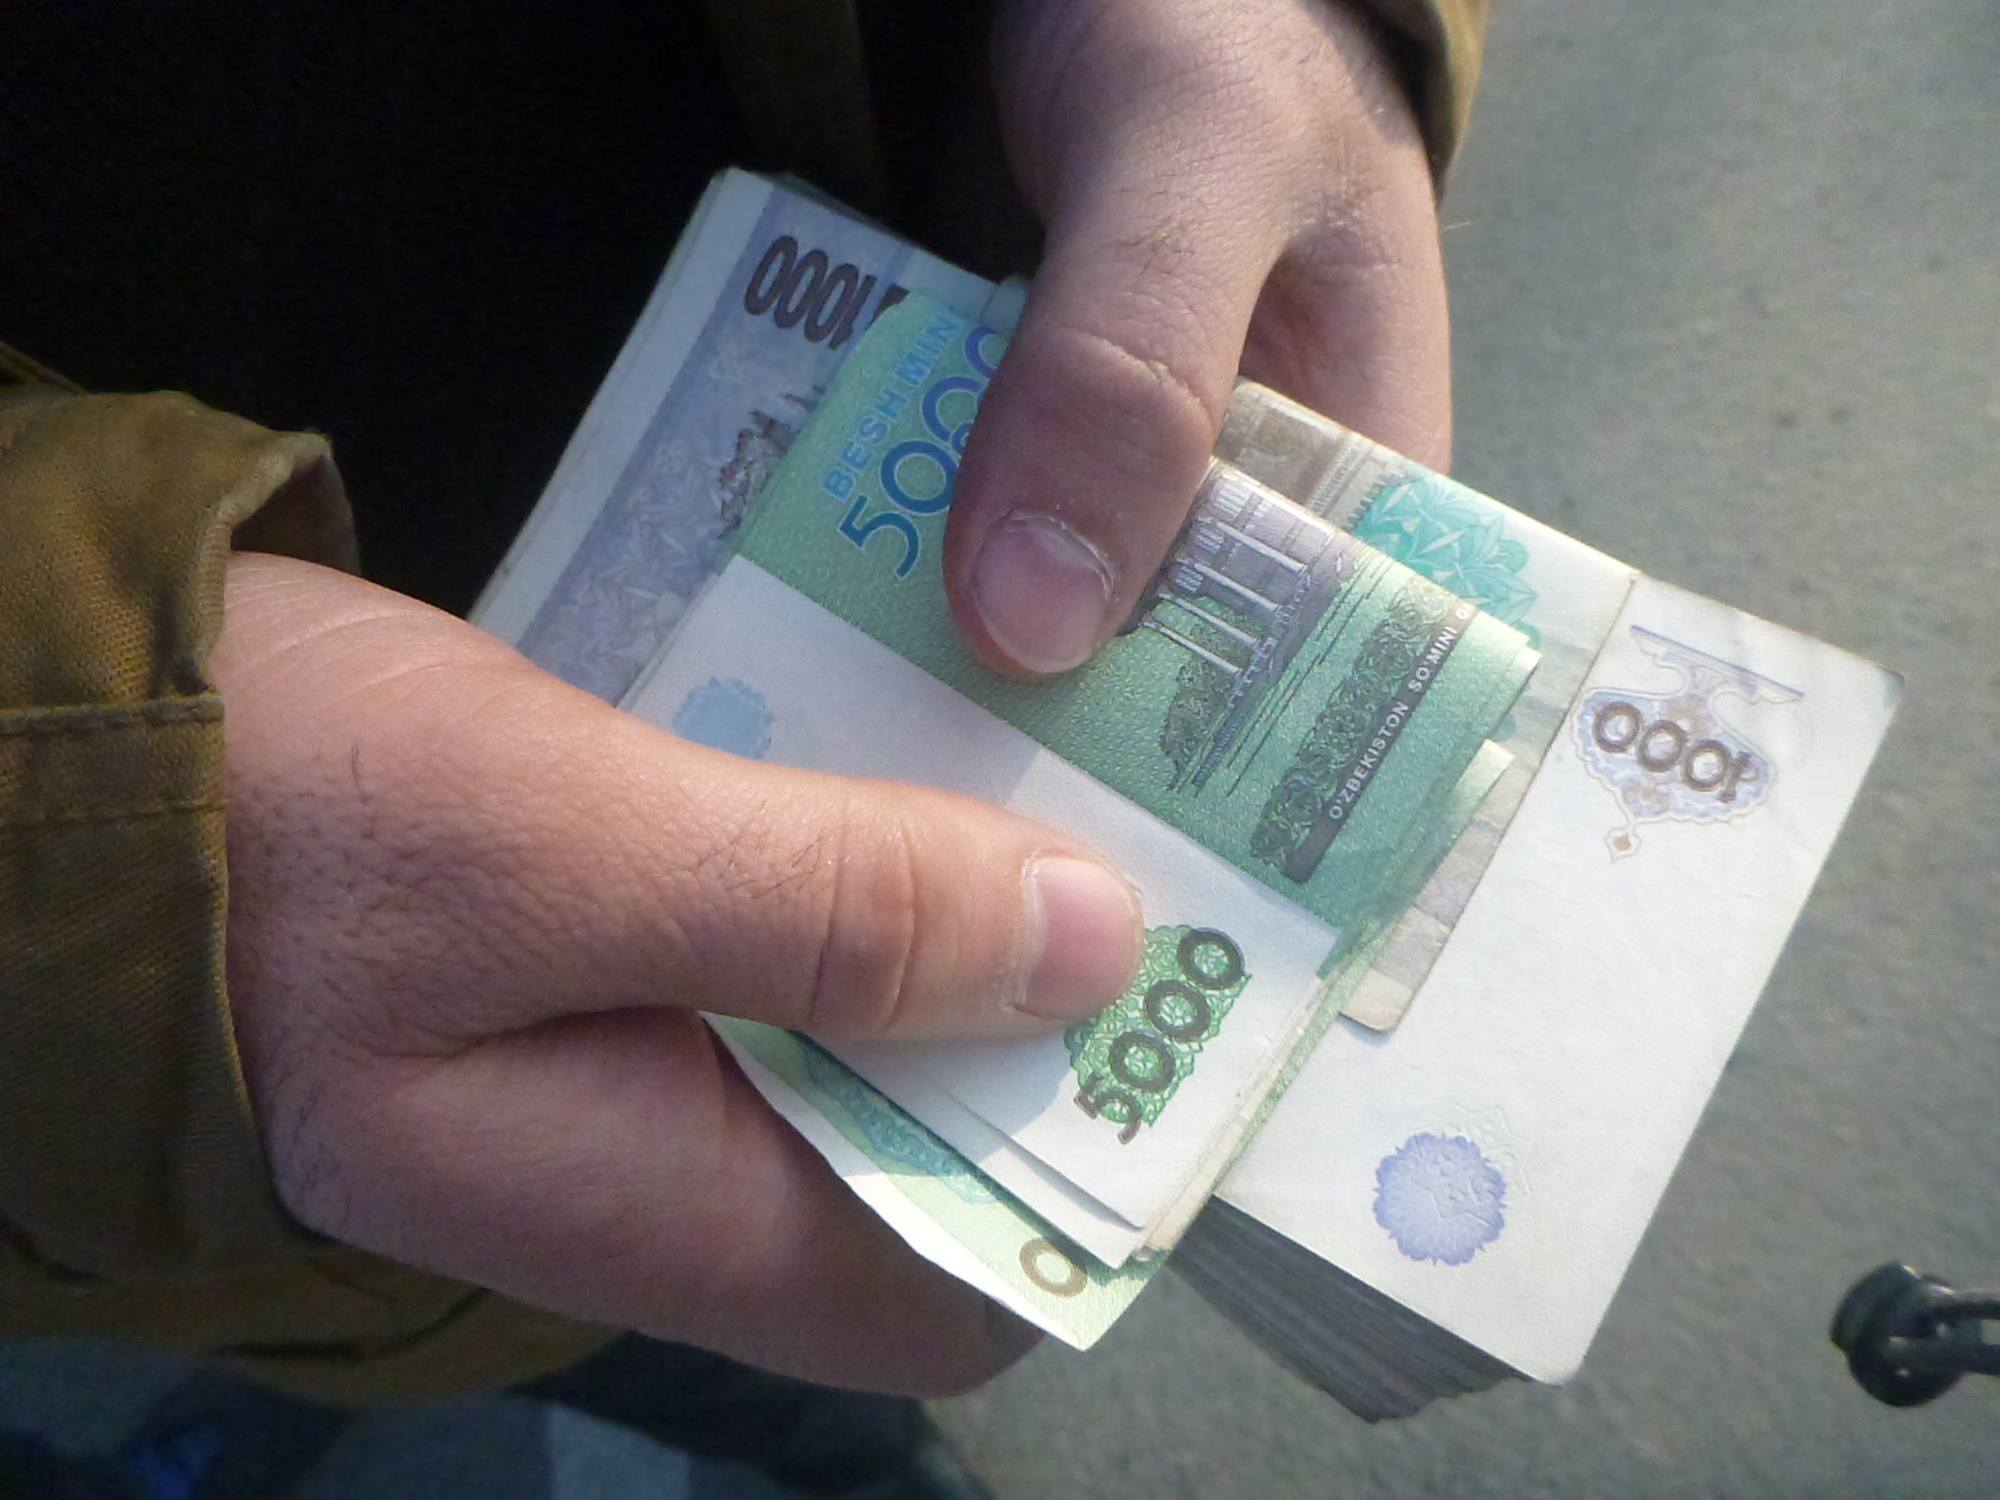 Стаж пенсии узбекистана